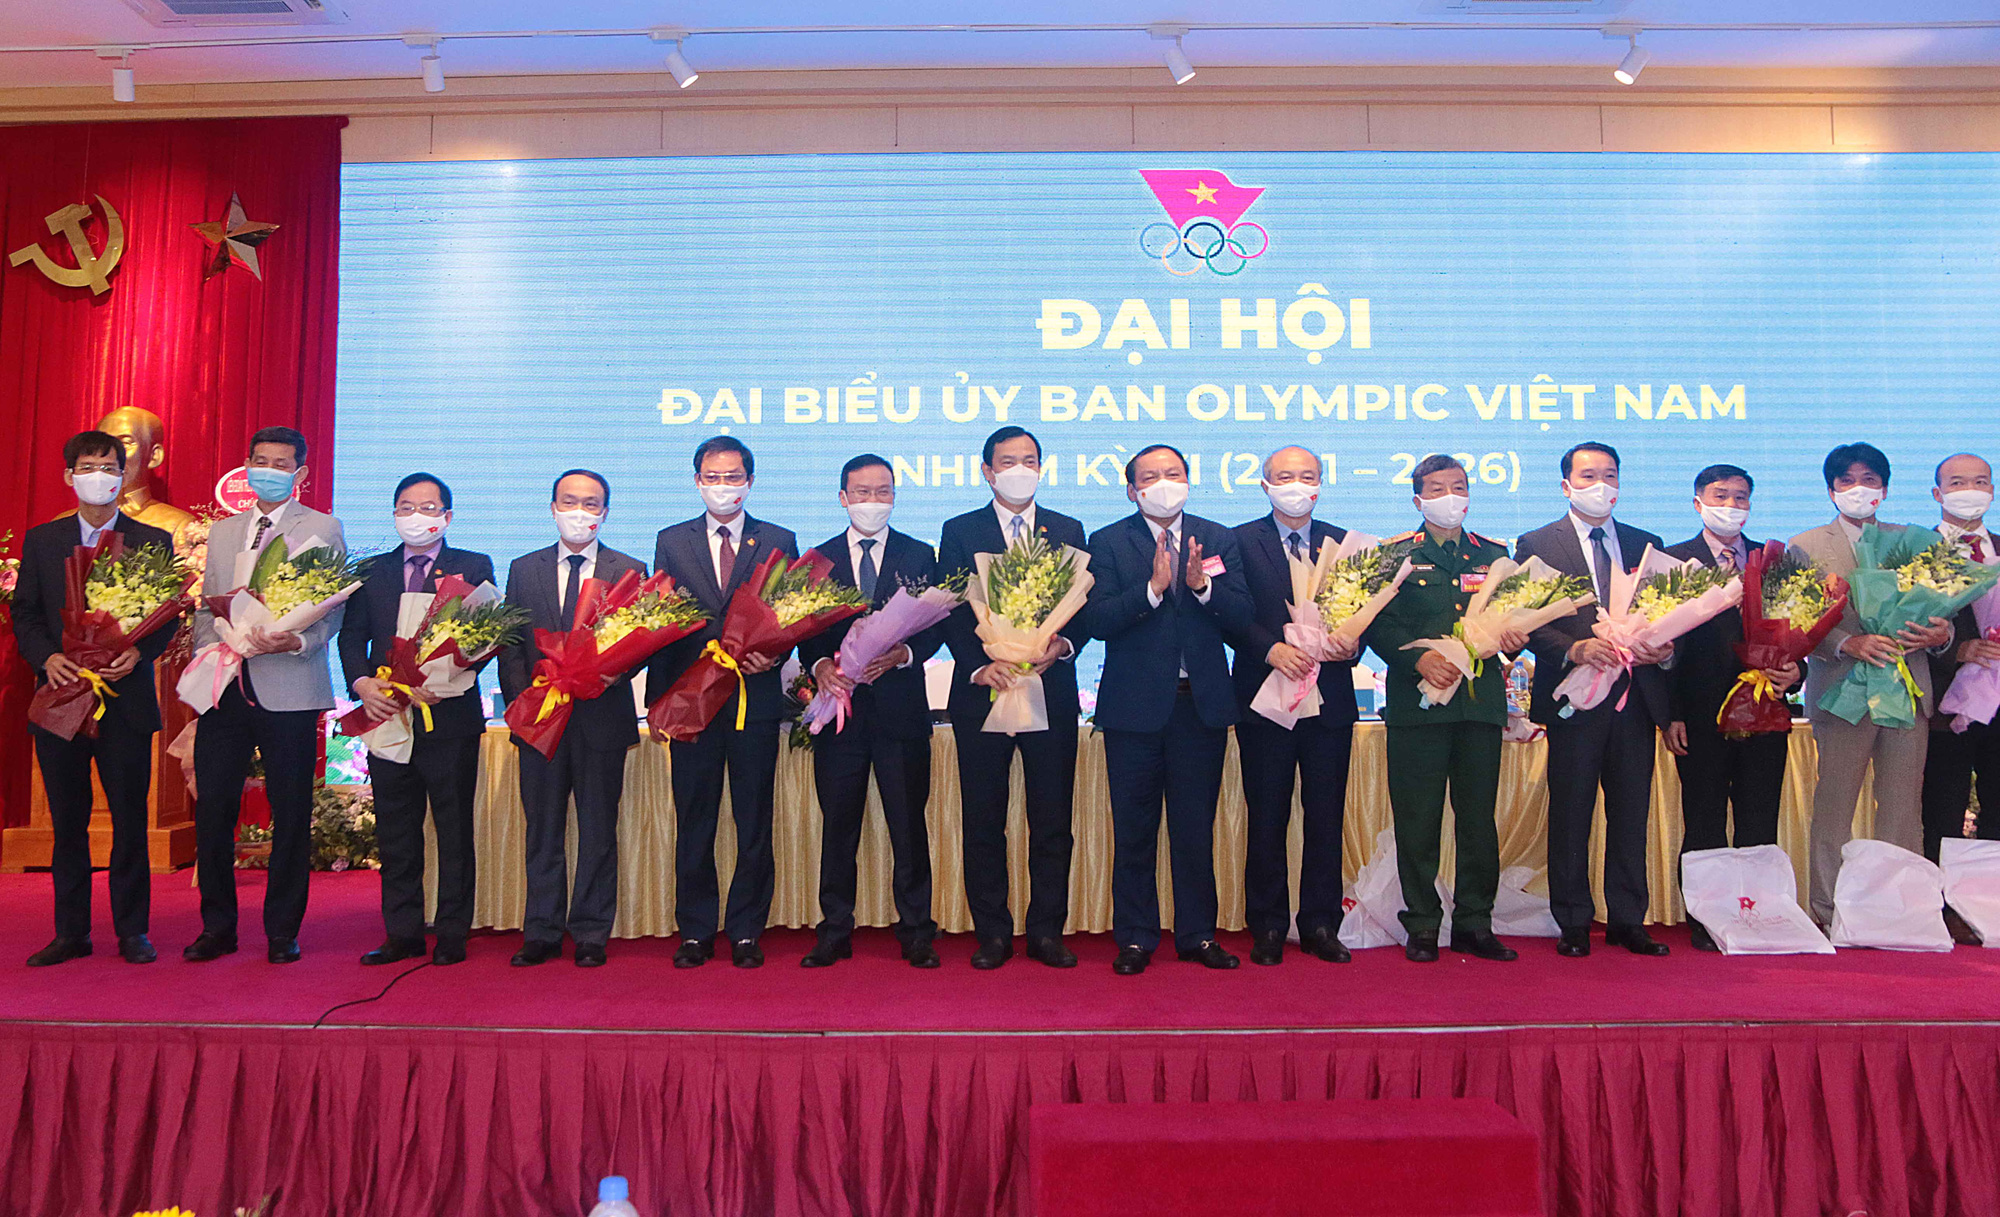 Bộ trưởng Bộ Văn hoá, Thể thao và Du lịch Nguyễn Văn Hùng được bầu là Chủ tịch Uỷ ban Olympic Việt Nam nhiệm kỳ VI - Ảnh 3.